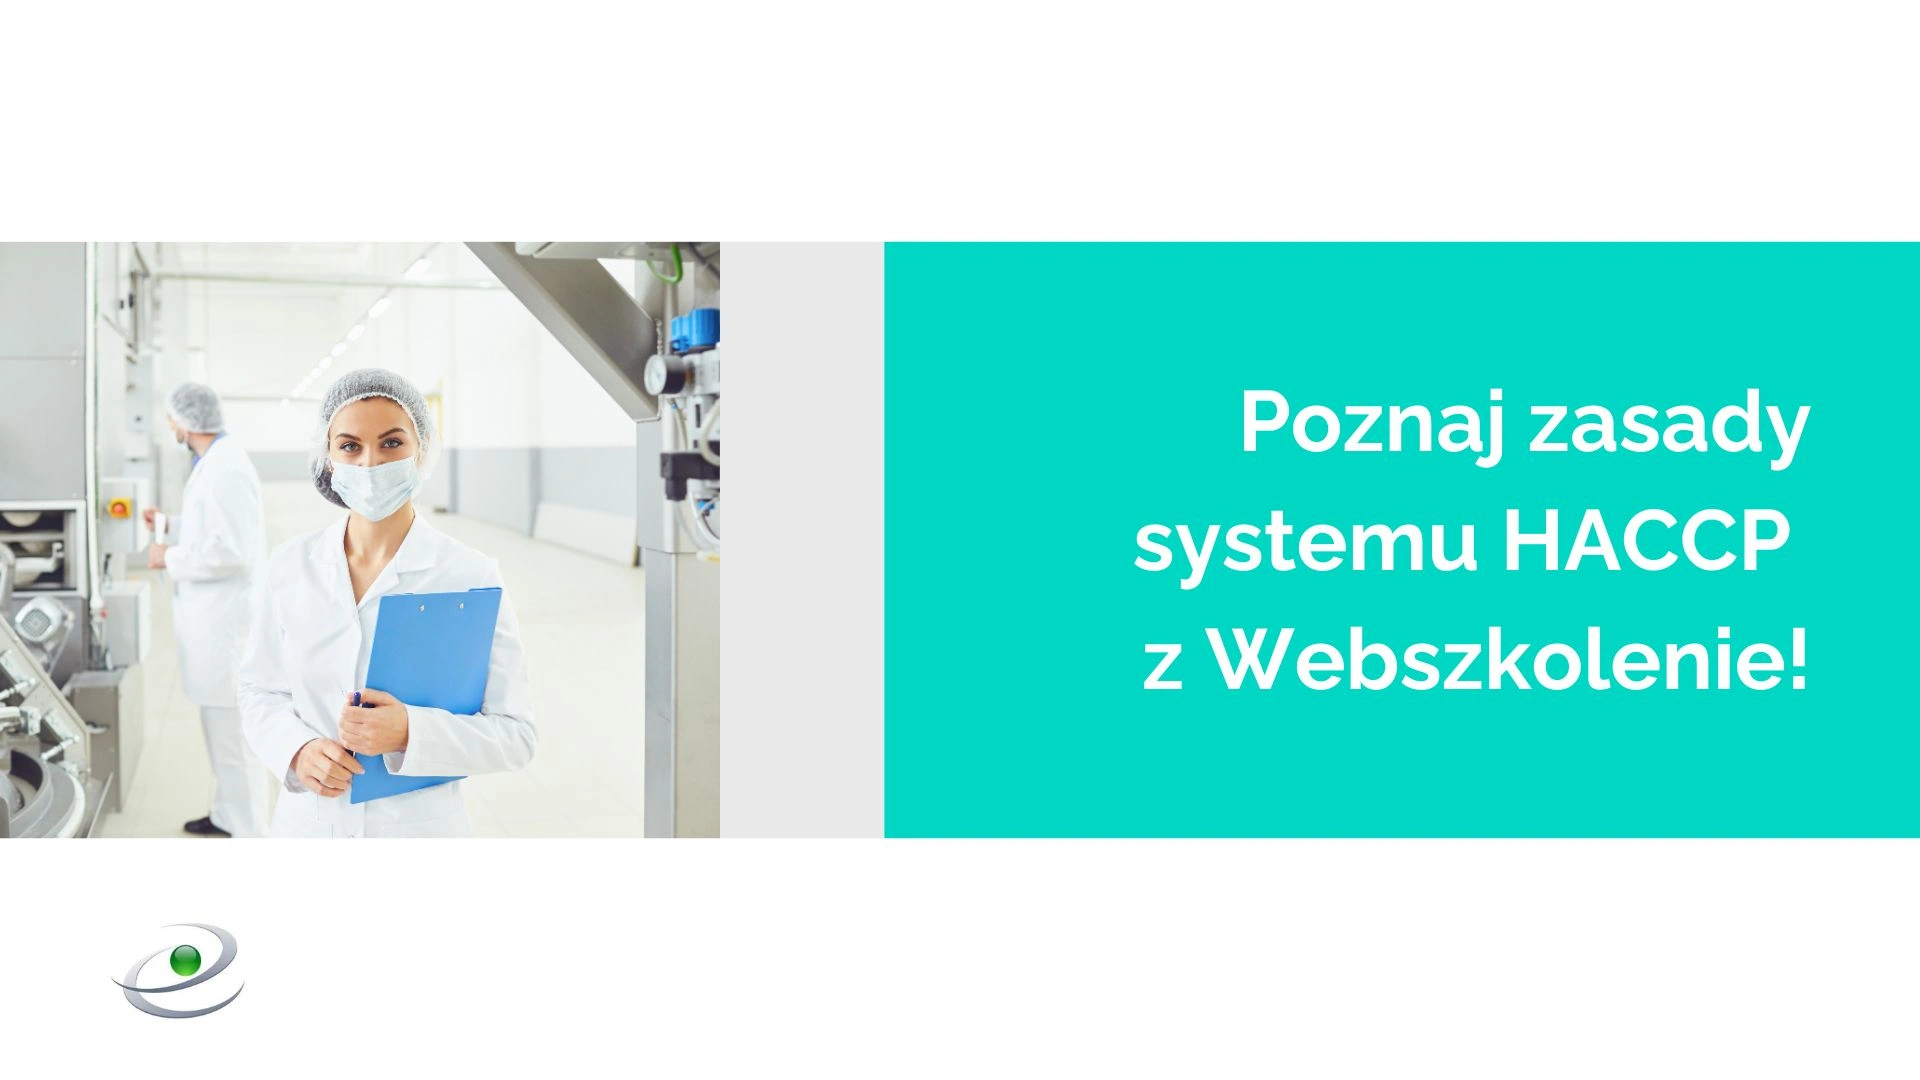 Poznaj zasady HACCP dla Ciebie - wypróbuj szkolenie Webszkolenie.pl